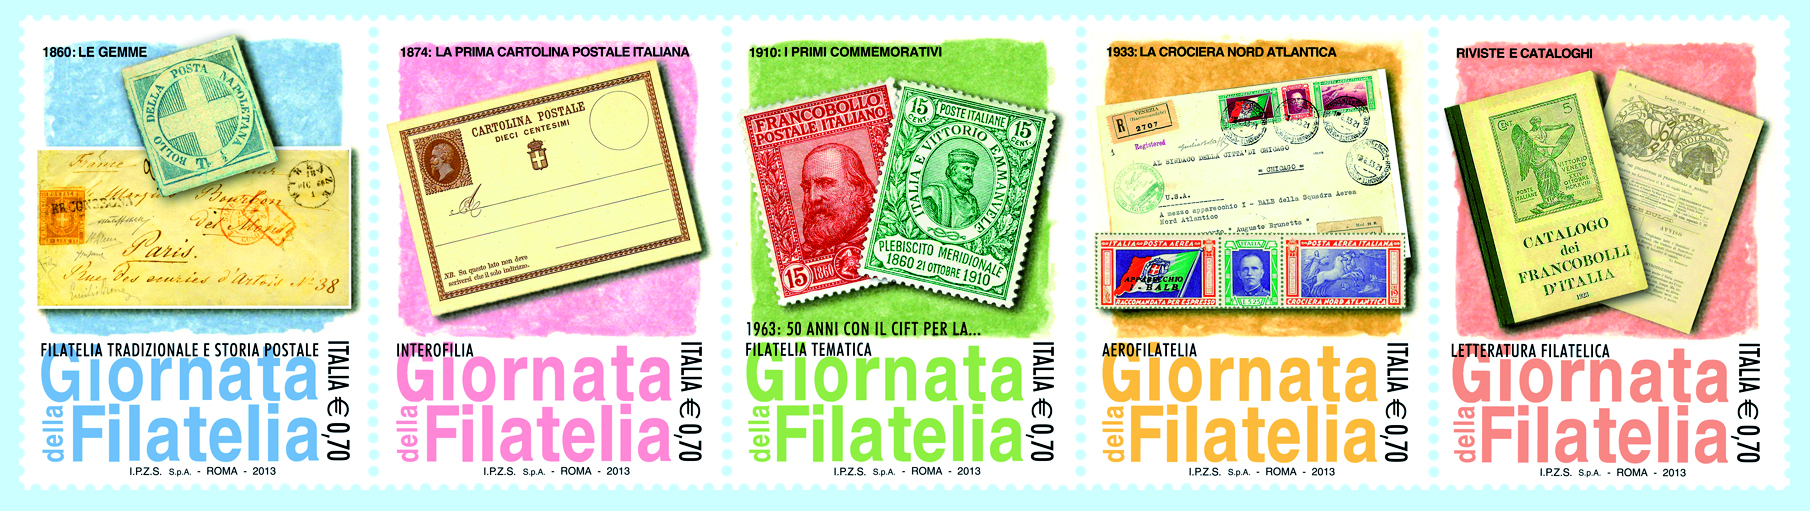 Cinque francobolli celebrativi della Giornata della filatelia